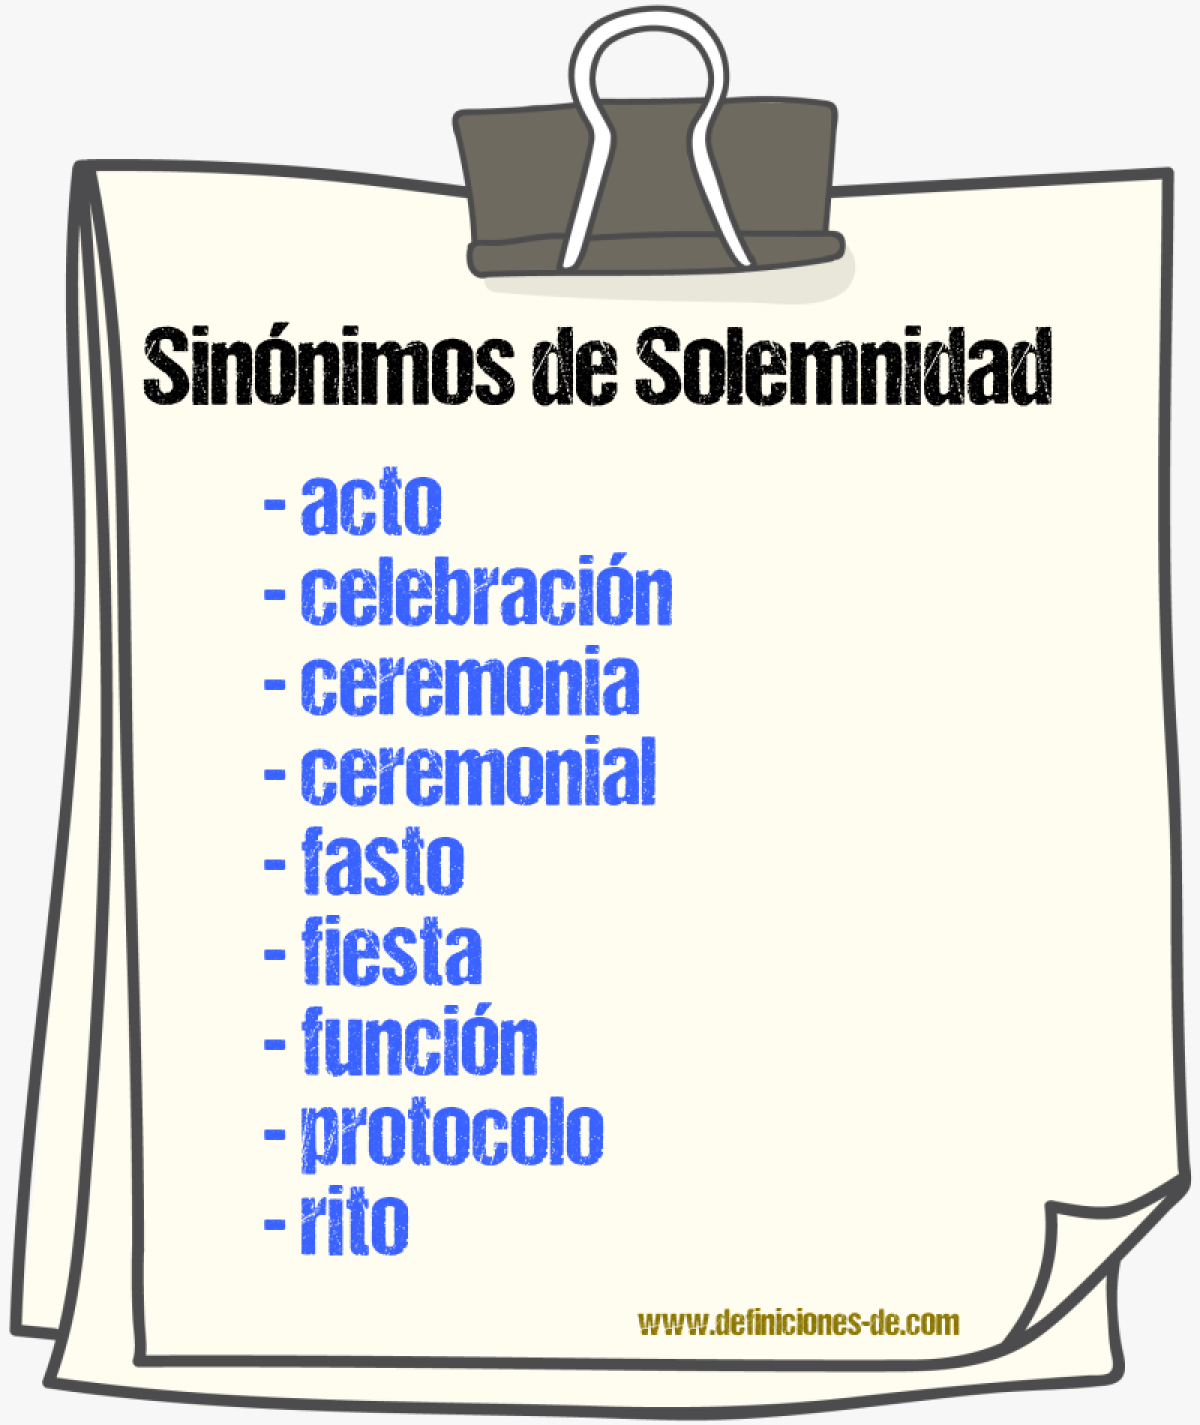 Sinónimos de solemnidad